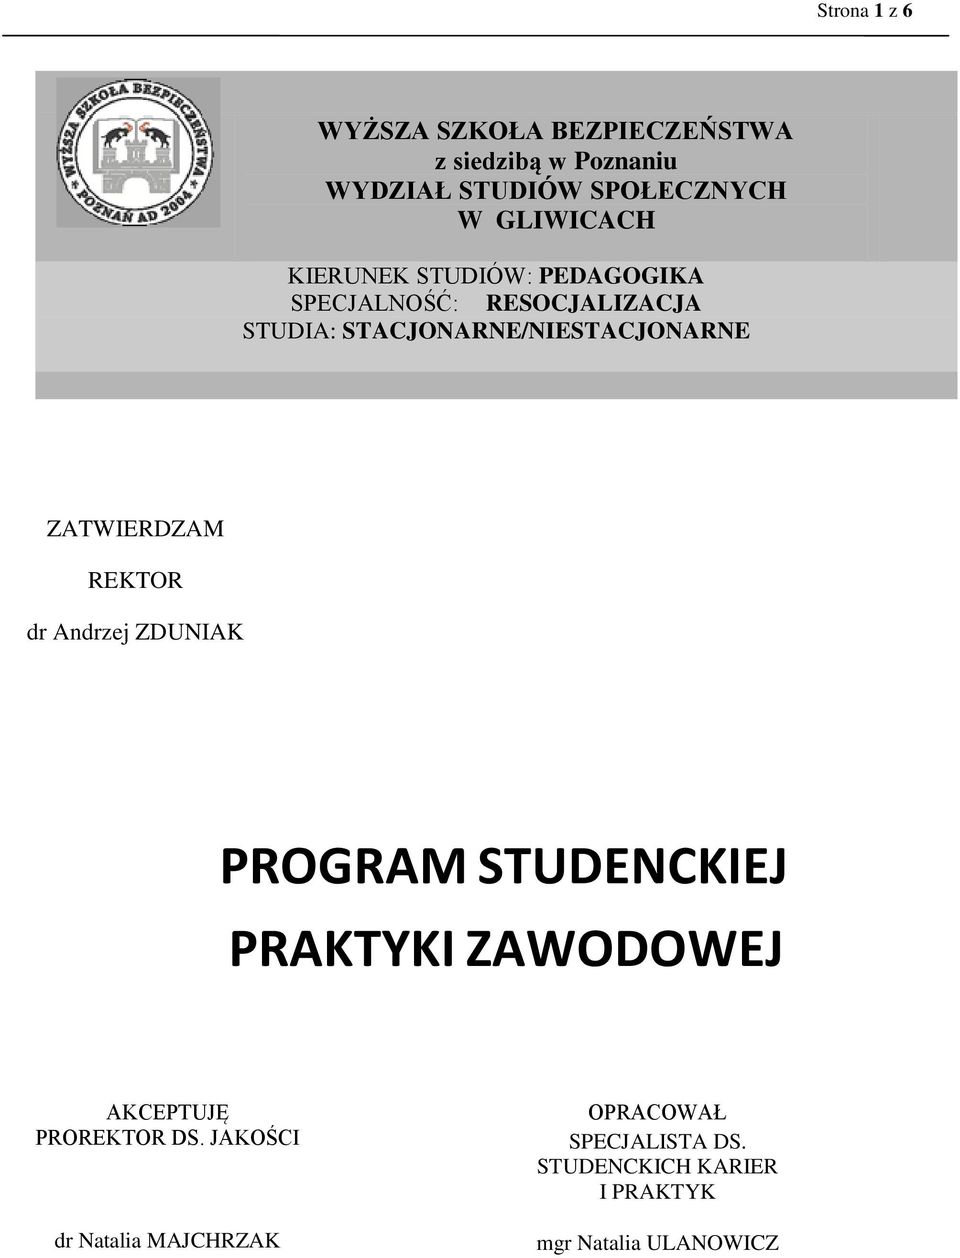 STACJONARNE/NIESTACJONARNE ZATWIERDZAM REKTOR dr Andrzej ZDUNIAK PROGRAM STUDENCKIEJ PRAKTYKI